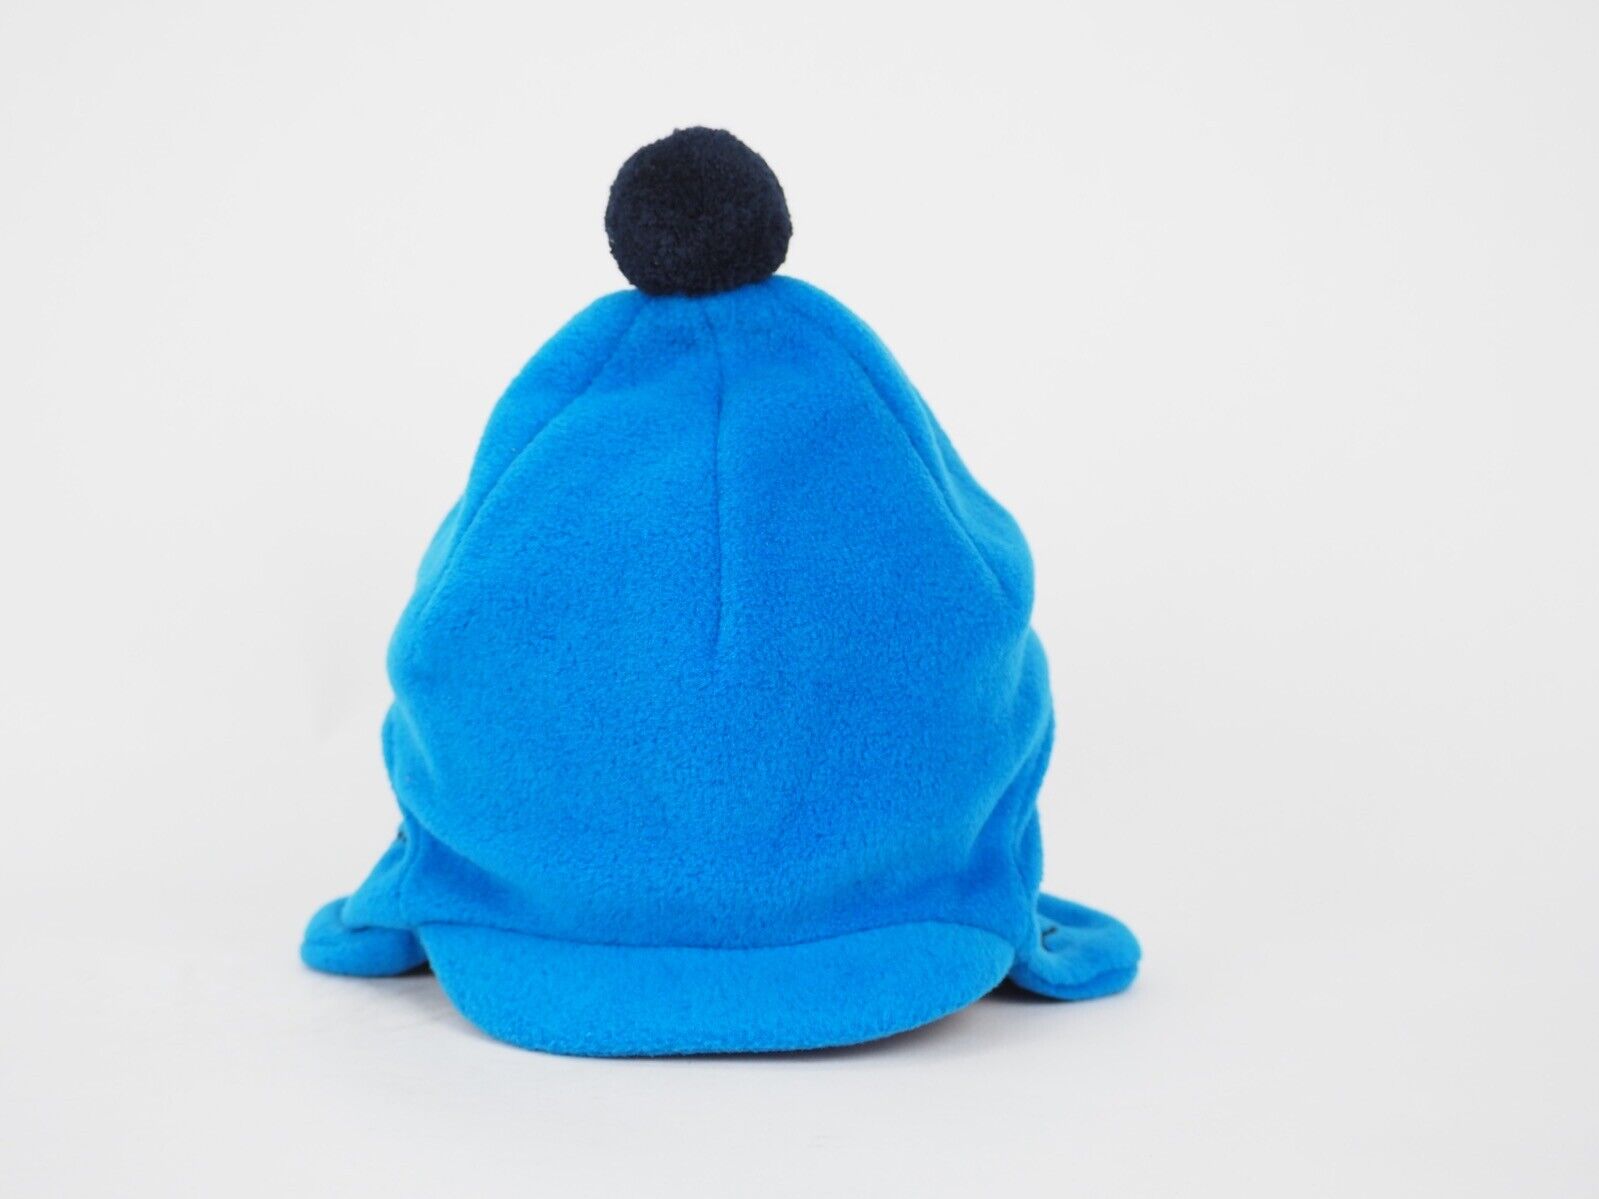 Kids Jack Wolfskin Stormlock 1902301 Electric Blue Warm Winter Hat Ear Cap - London Top Style